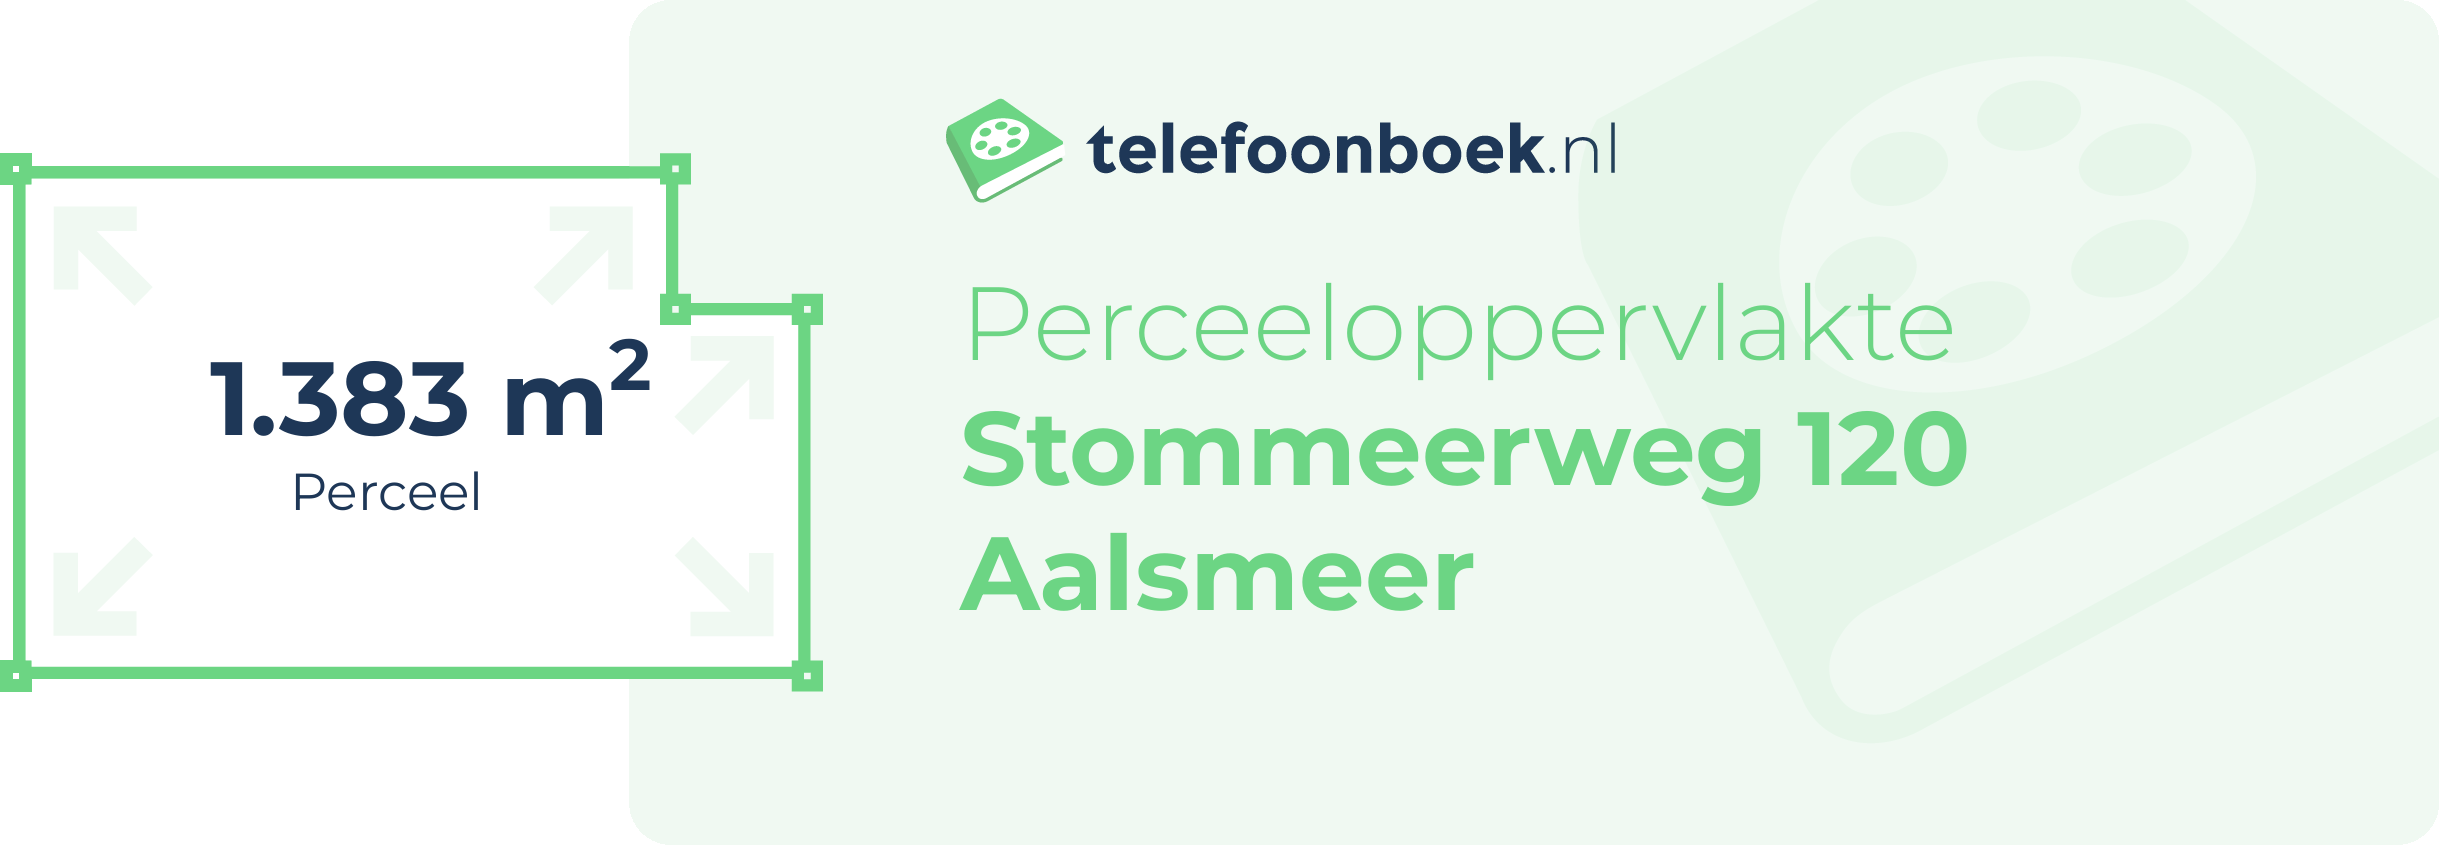 Perceeloppervlakte Stommeerweg 120 Aalsmeer